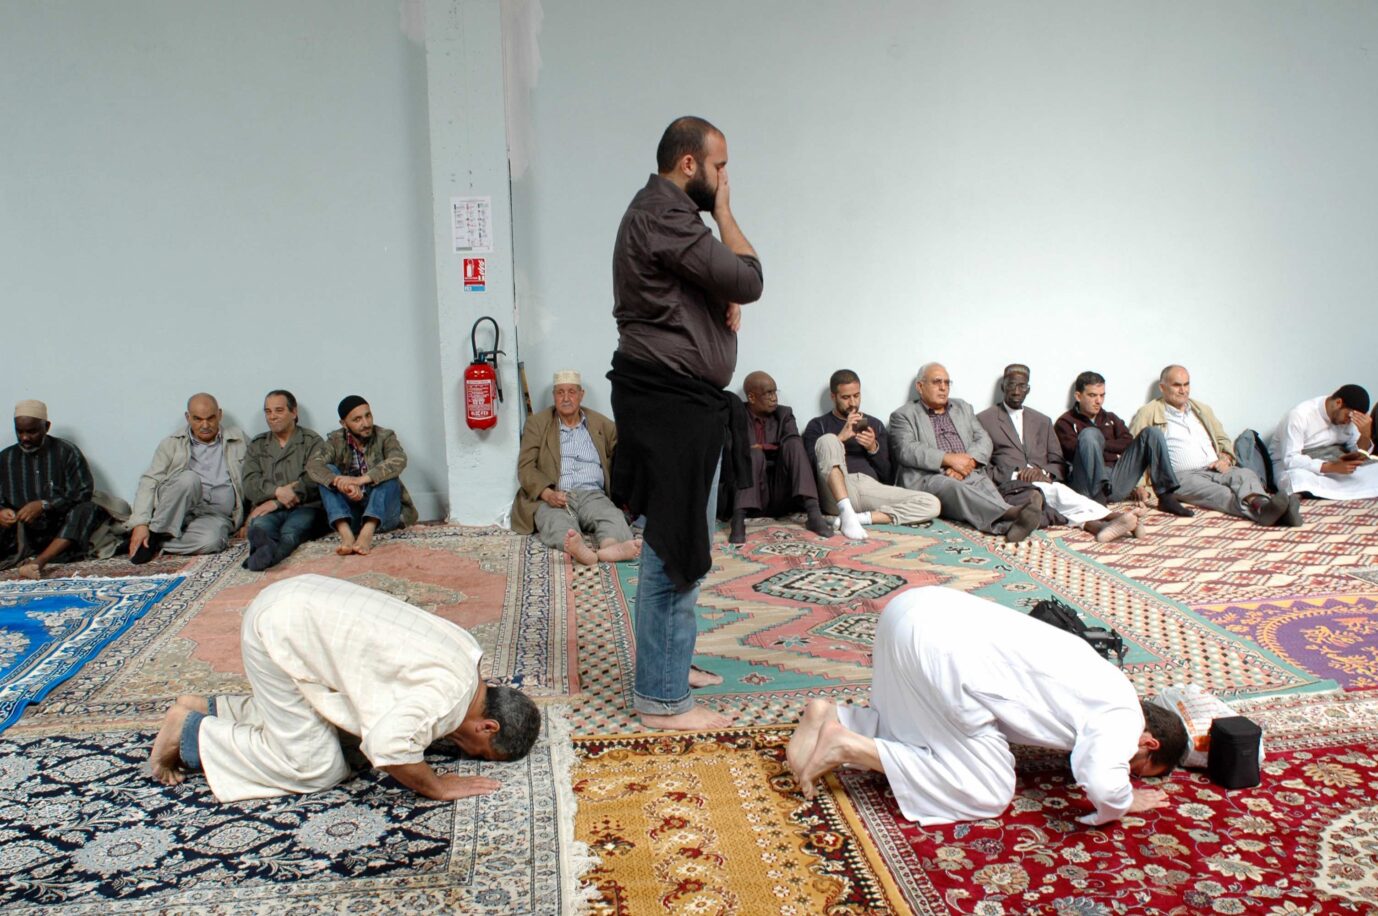 Koalition mit dem Islam statt Reconquista: Muslime beten in einer Moschee in Paris